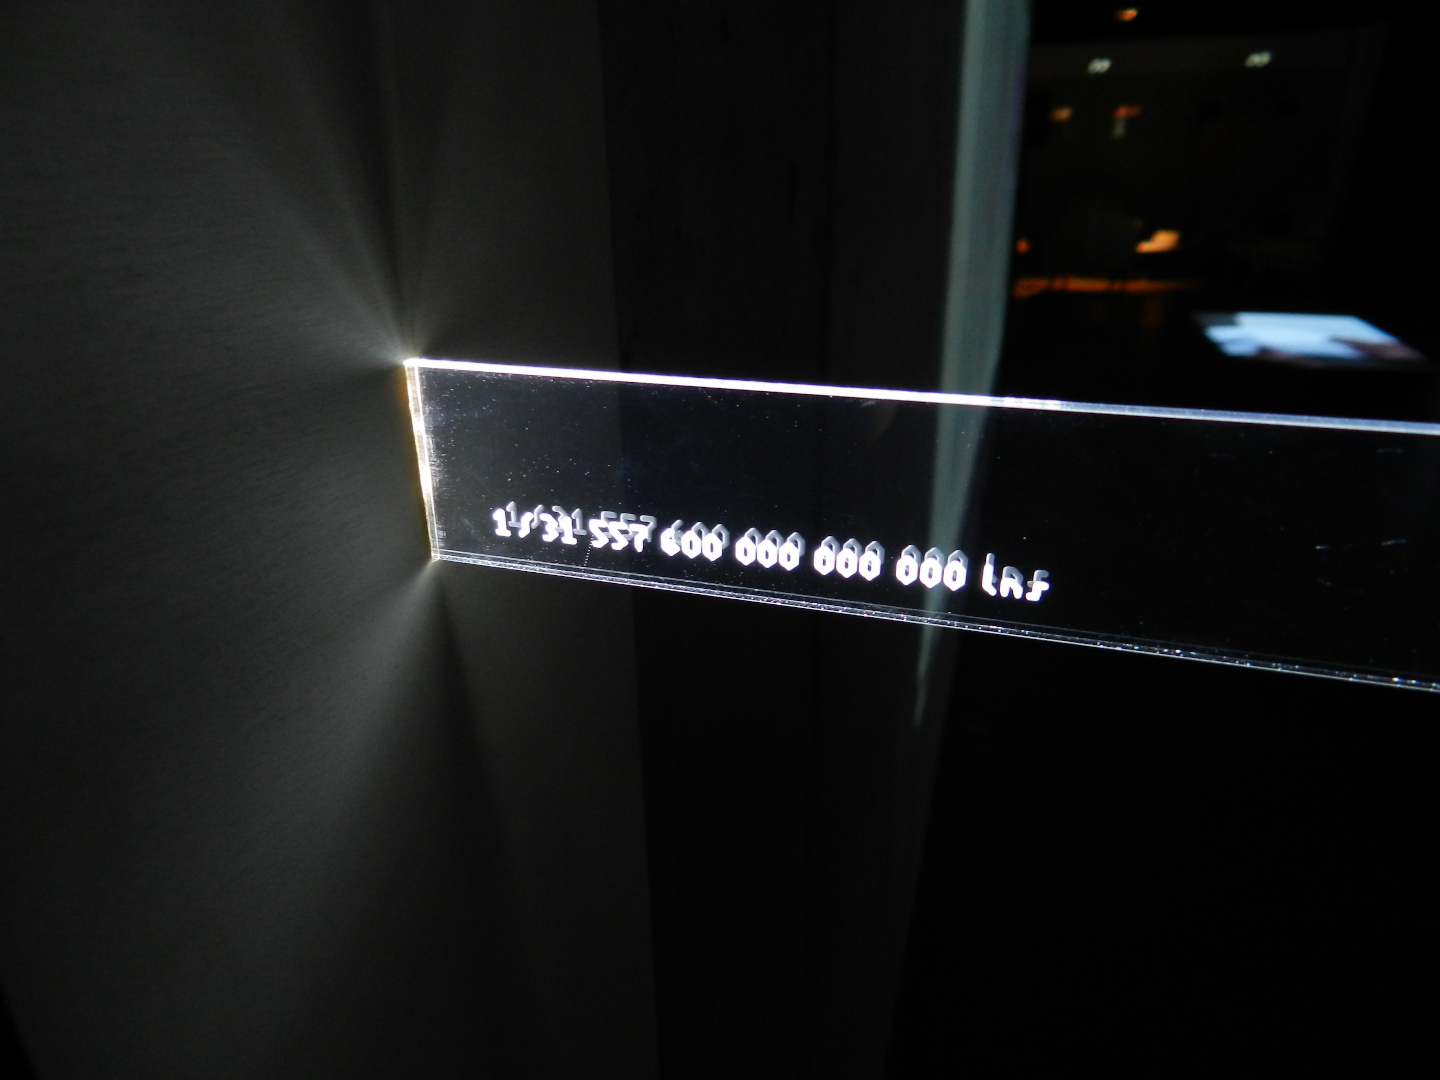 Image 4 : Vue de détail d'une gravure indiquant la distance parcourue par la lumière en nano-seconde sur la règle